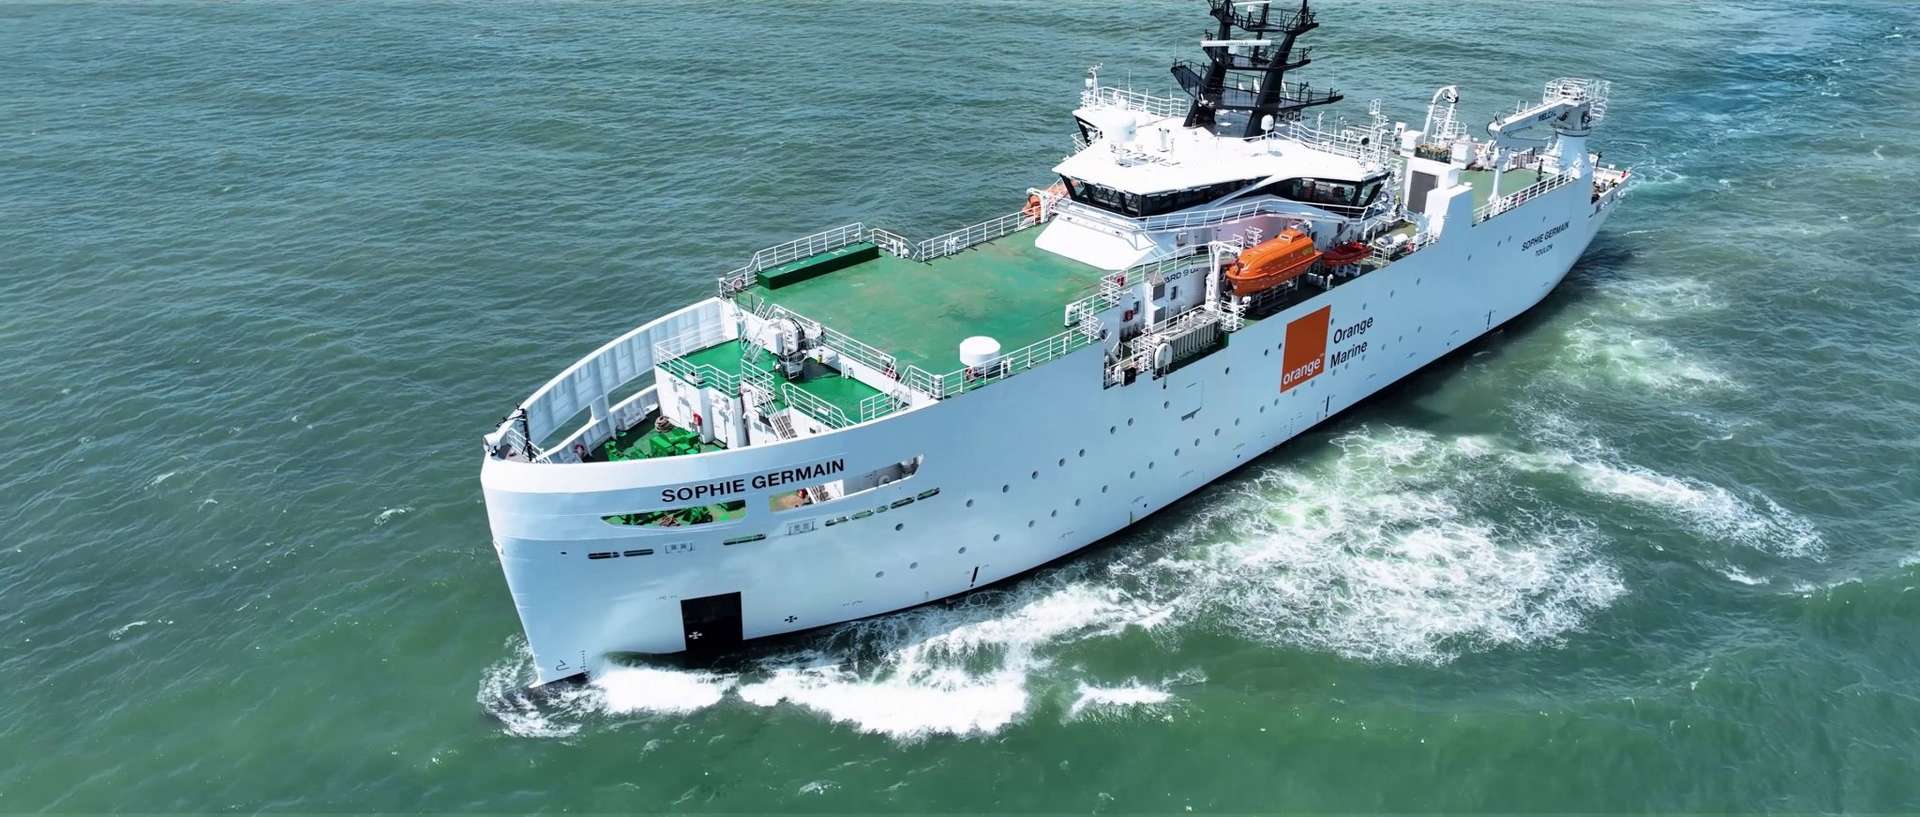 Le Sophie Germain, un navire câblier plus respectueux de l'environnement